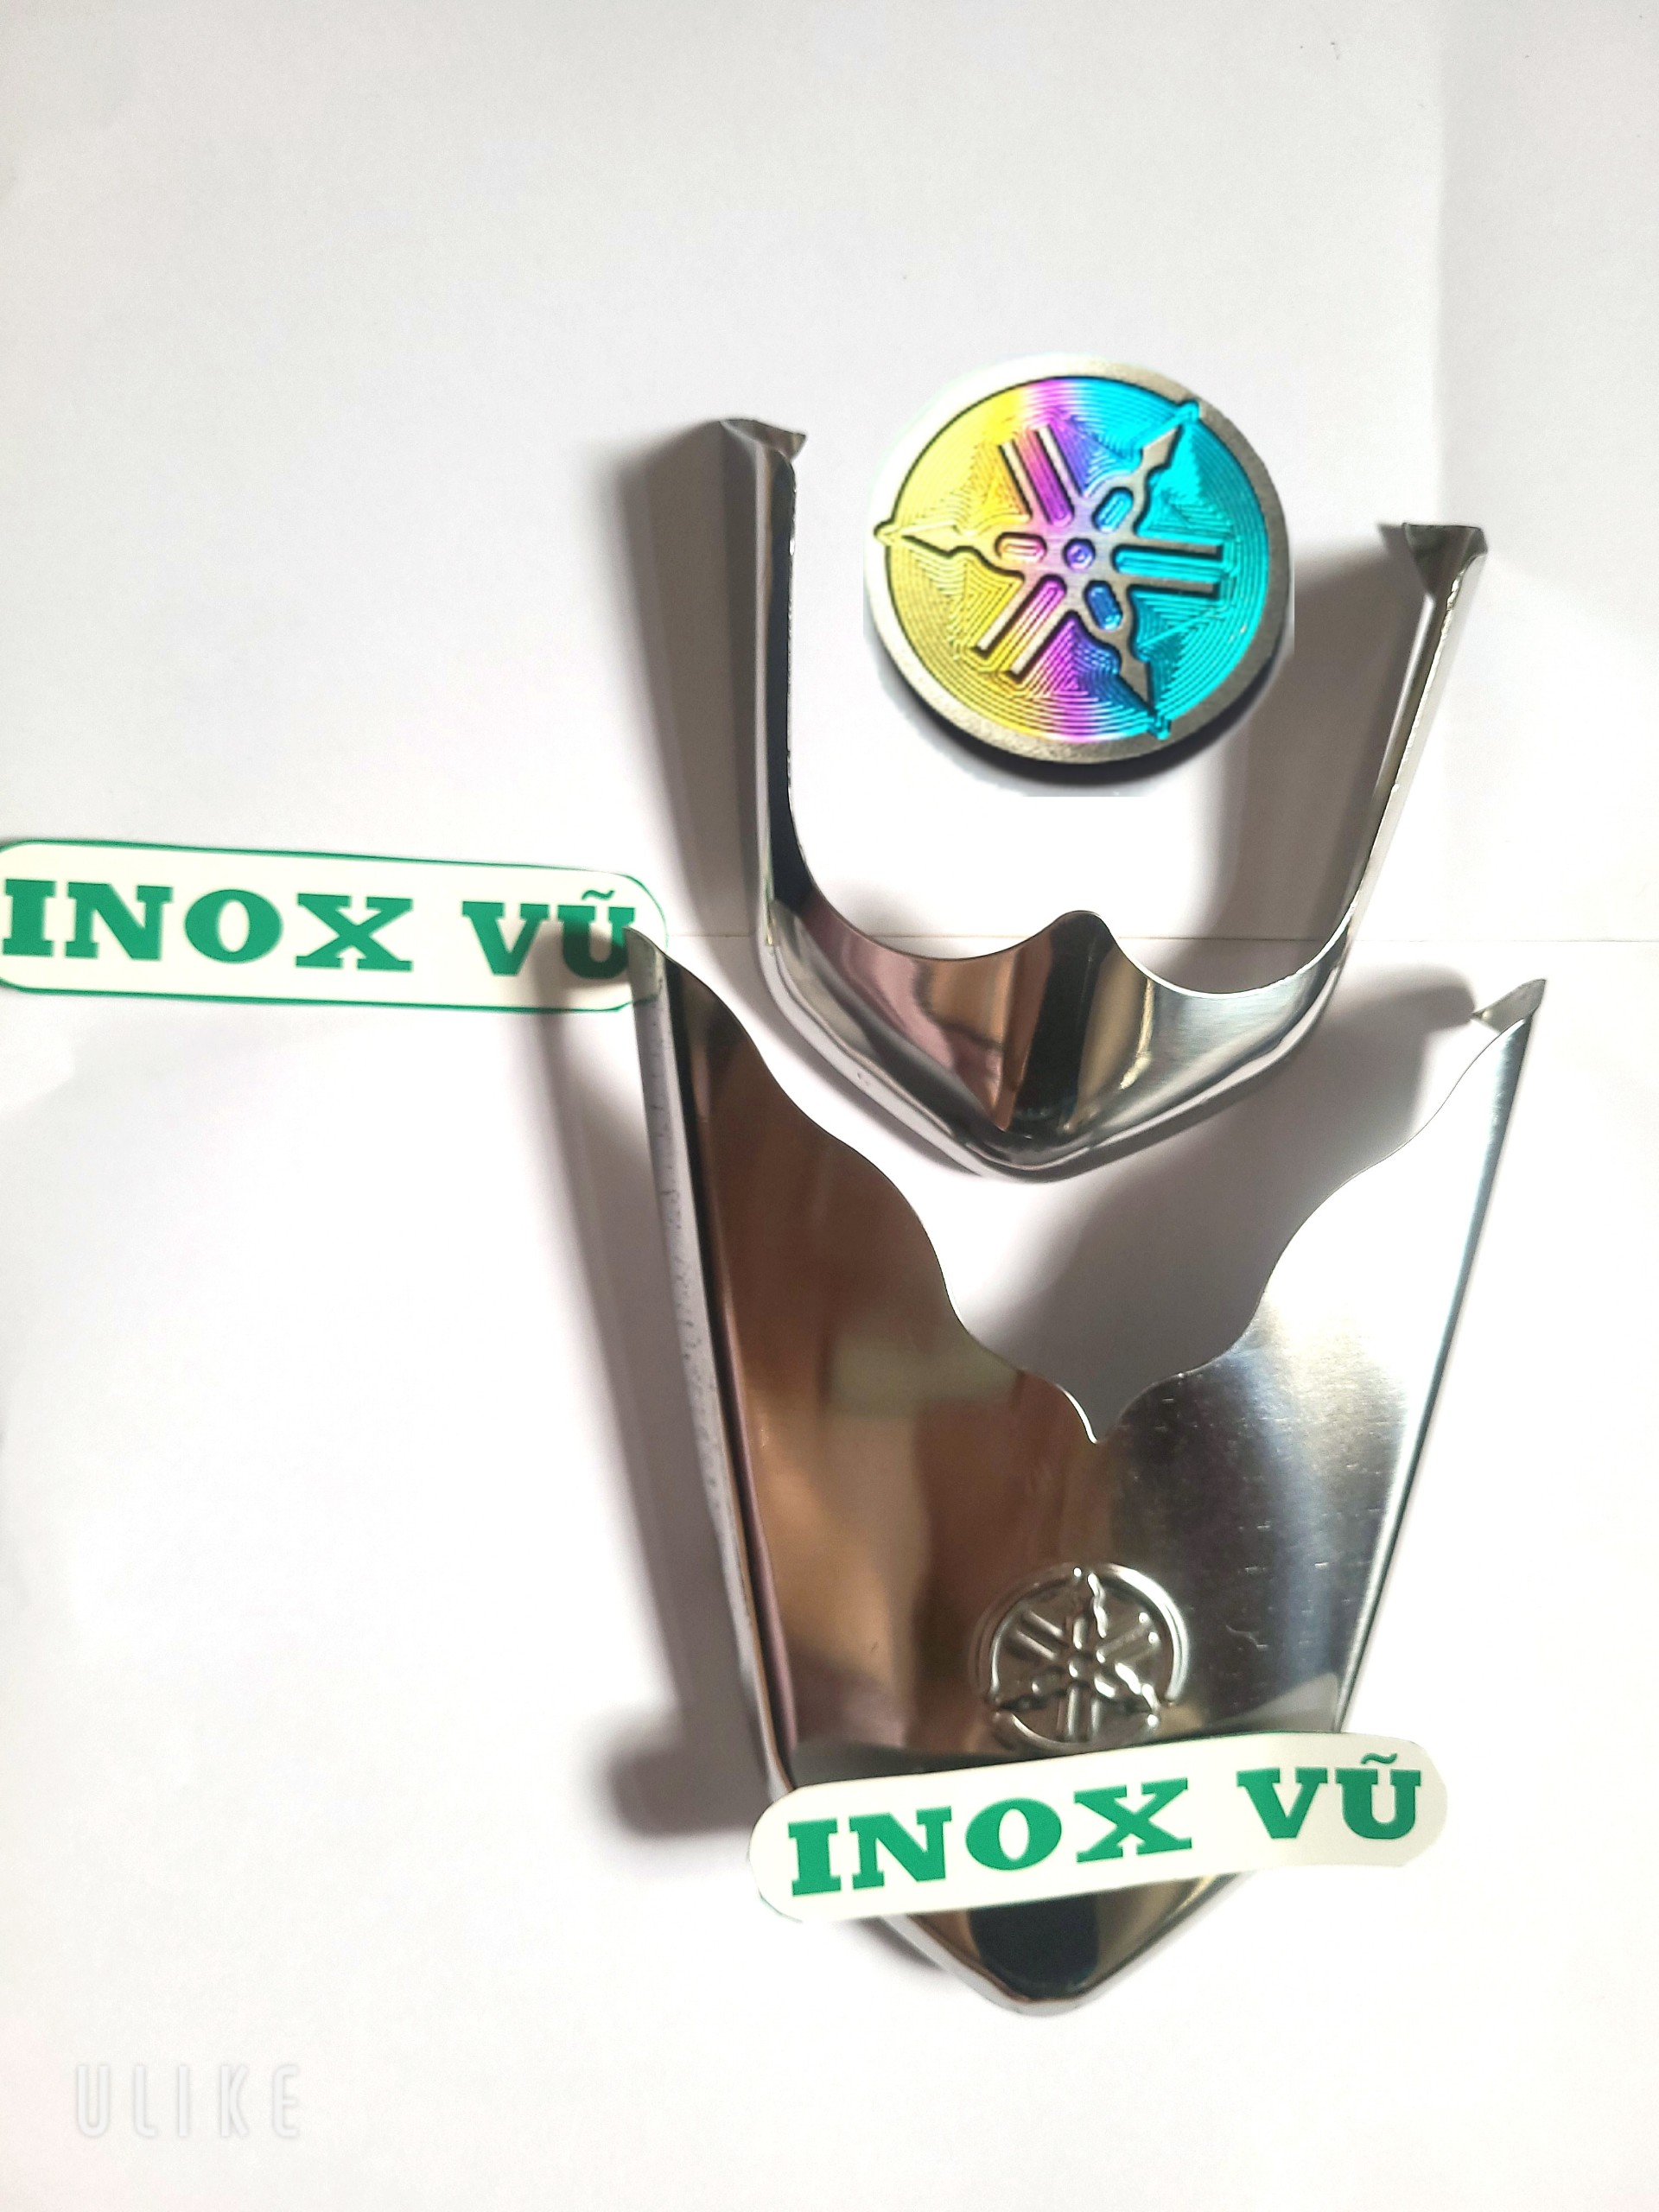 Combo Bộ ốp dè INOX xe Sirius sản xuất năm 2013-2021 + 1 tem logo Titan  YAMAHHA giá 1 cặp tại xưởng INOX Vũ